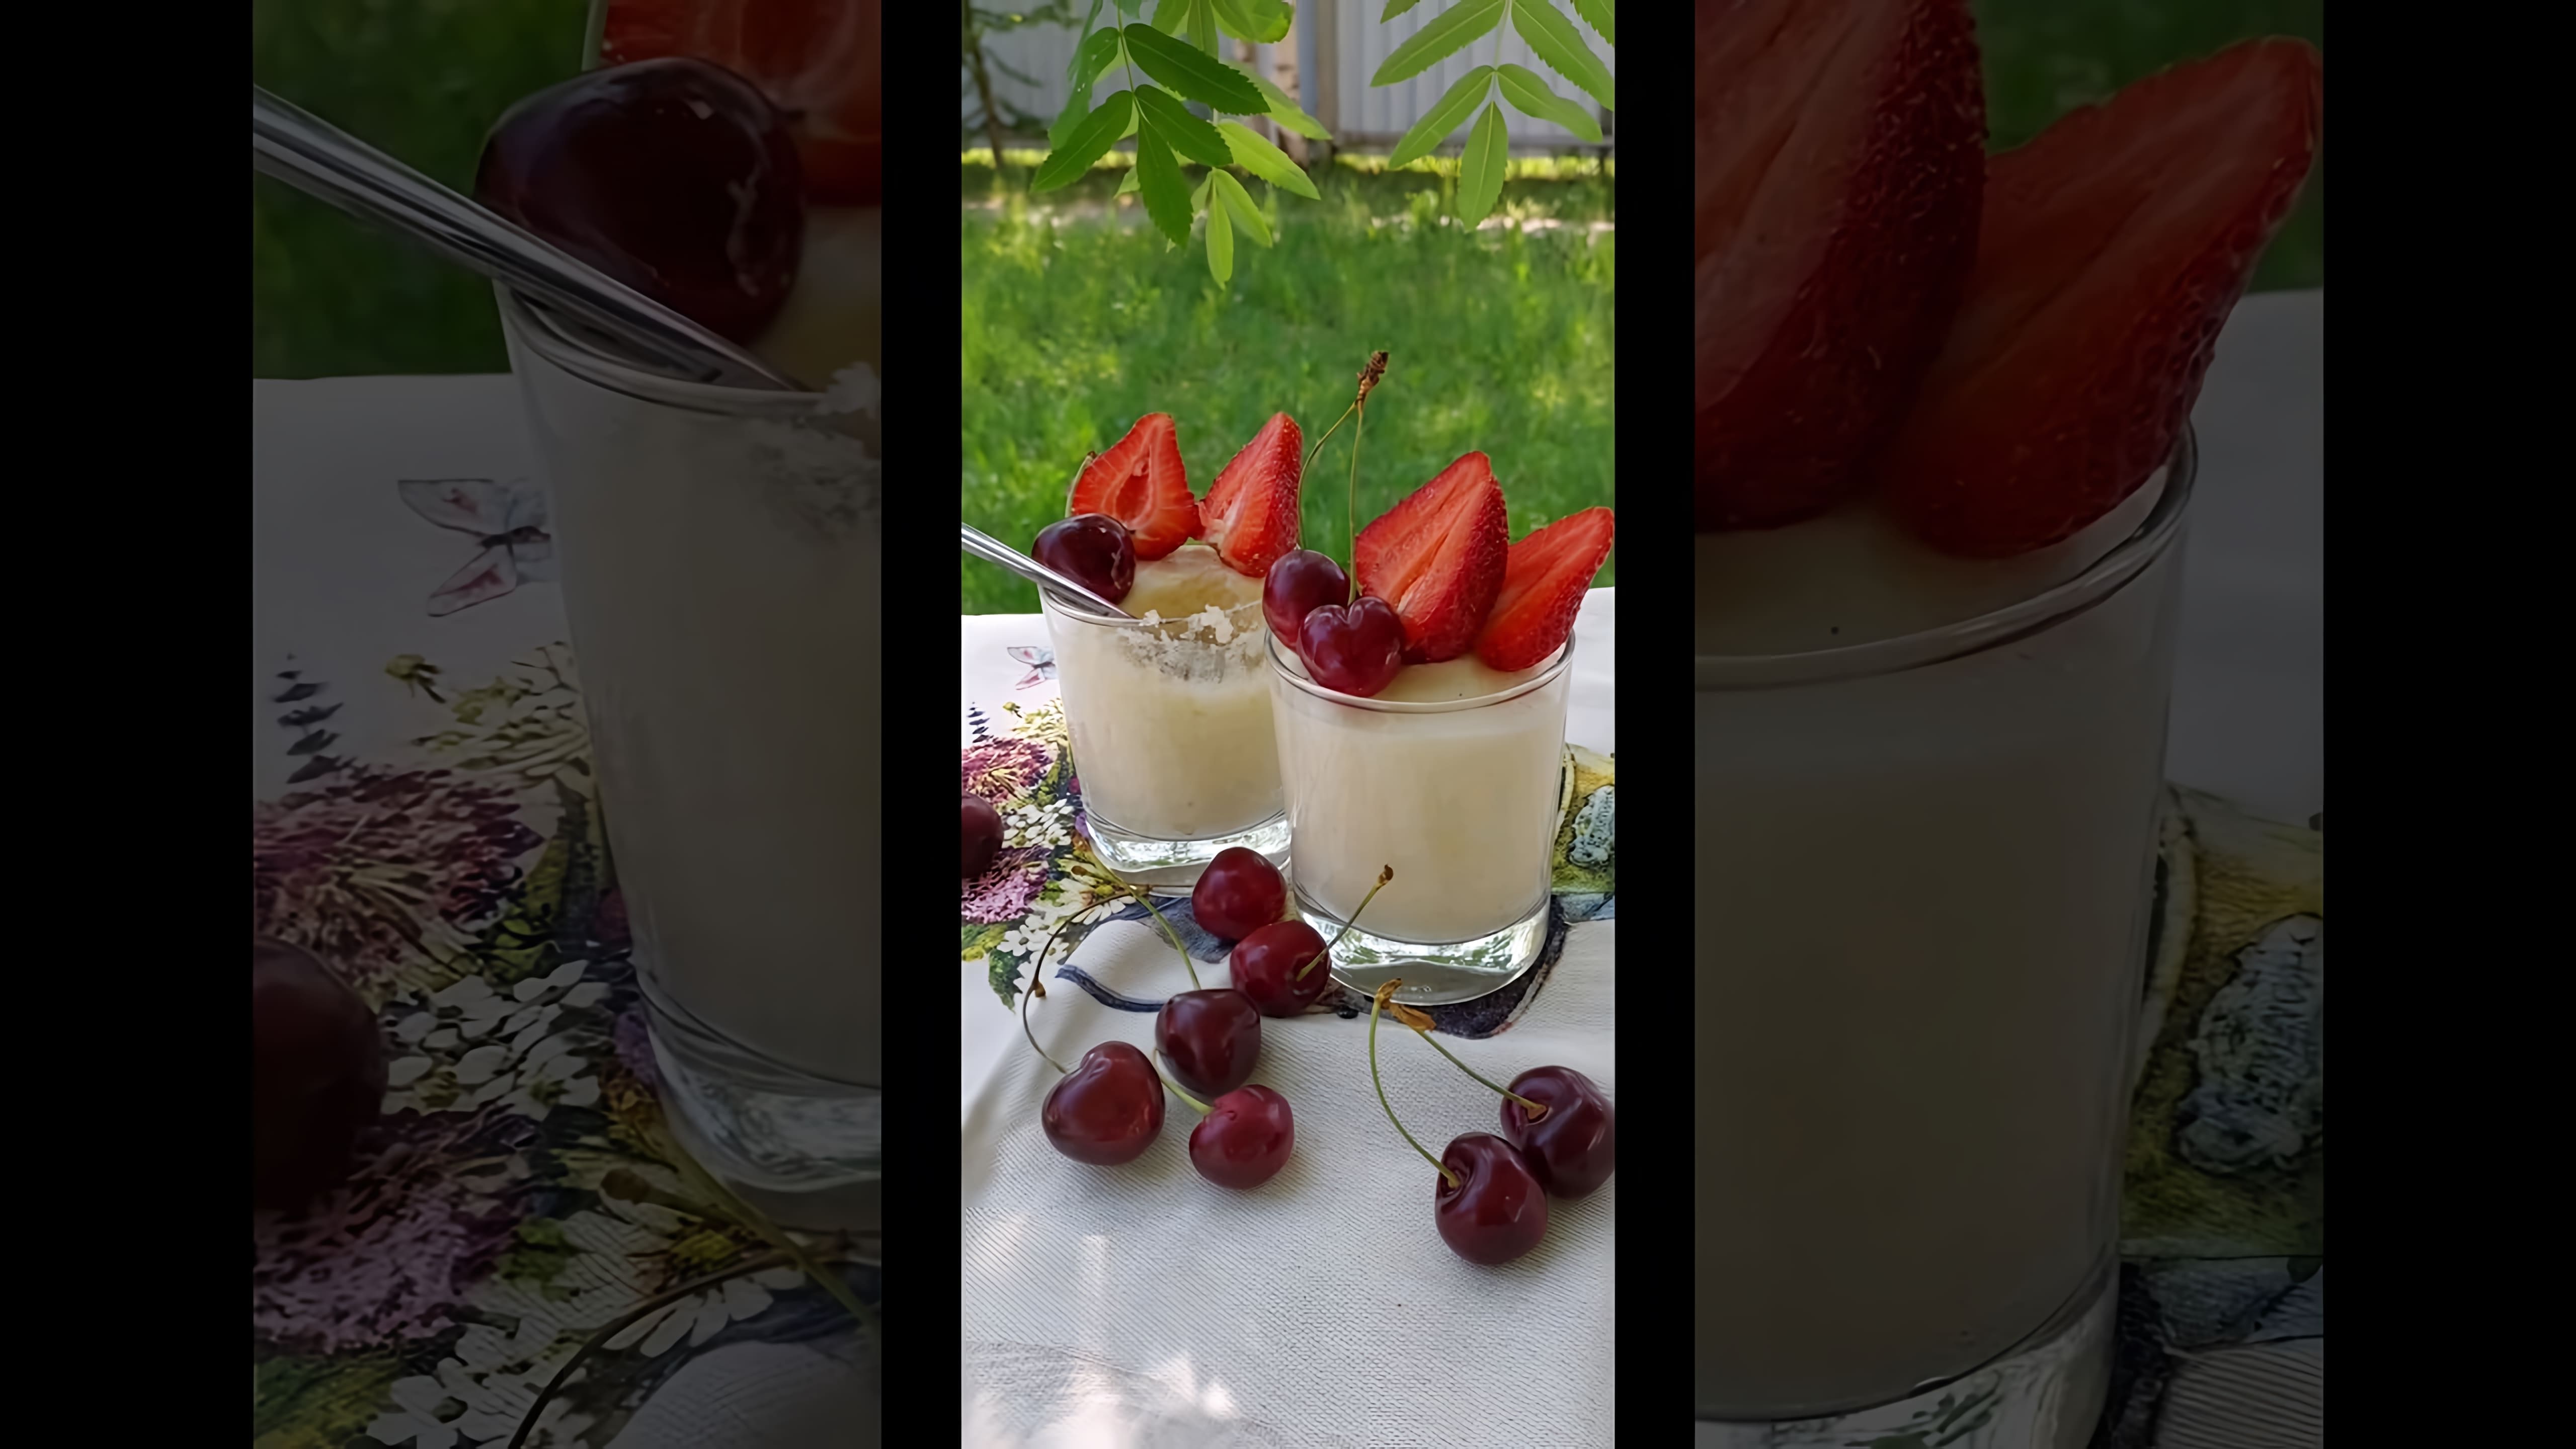 В этом видео демонстрируется процесс приготовления летнего десерта с ягодами